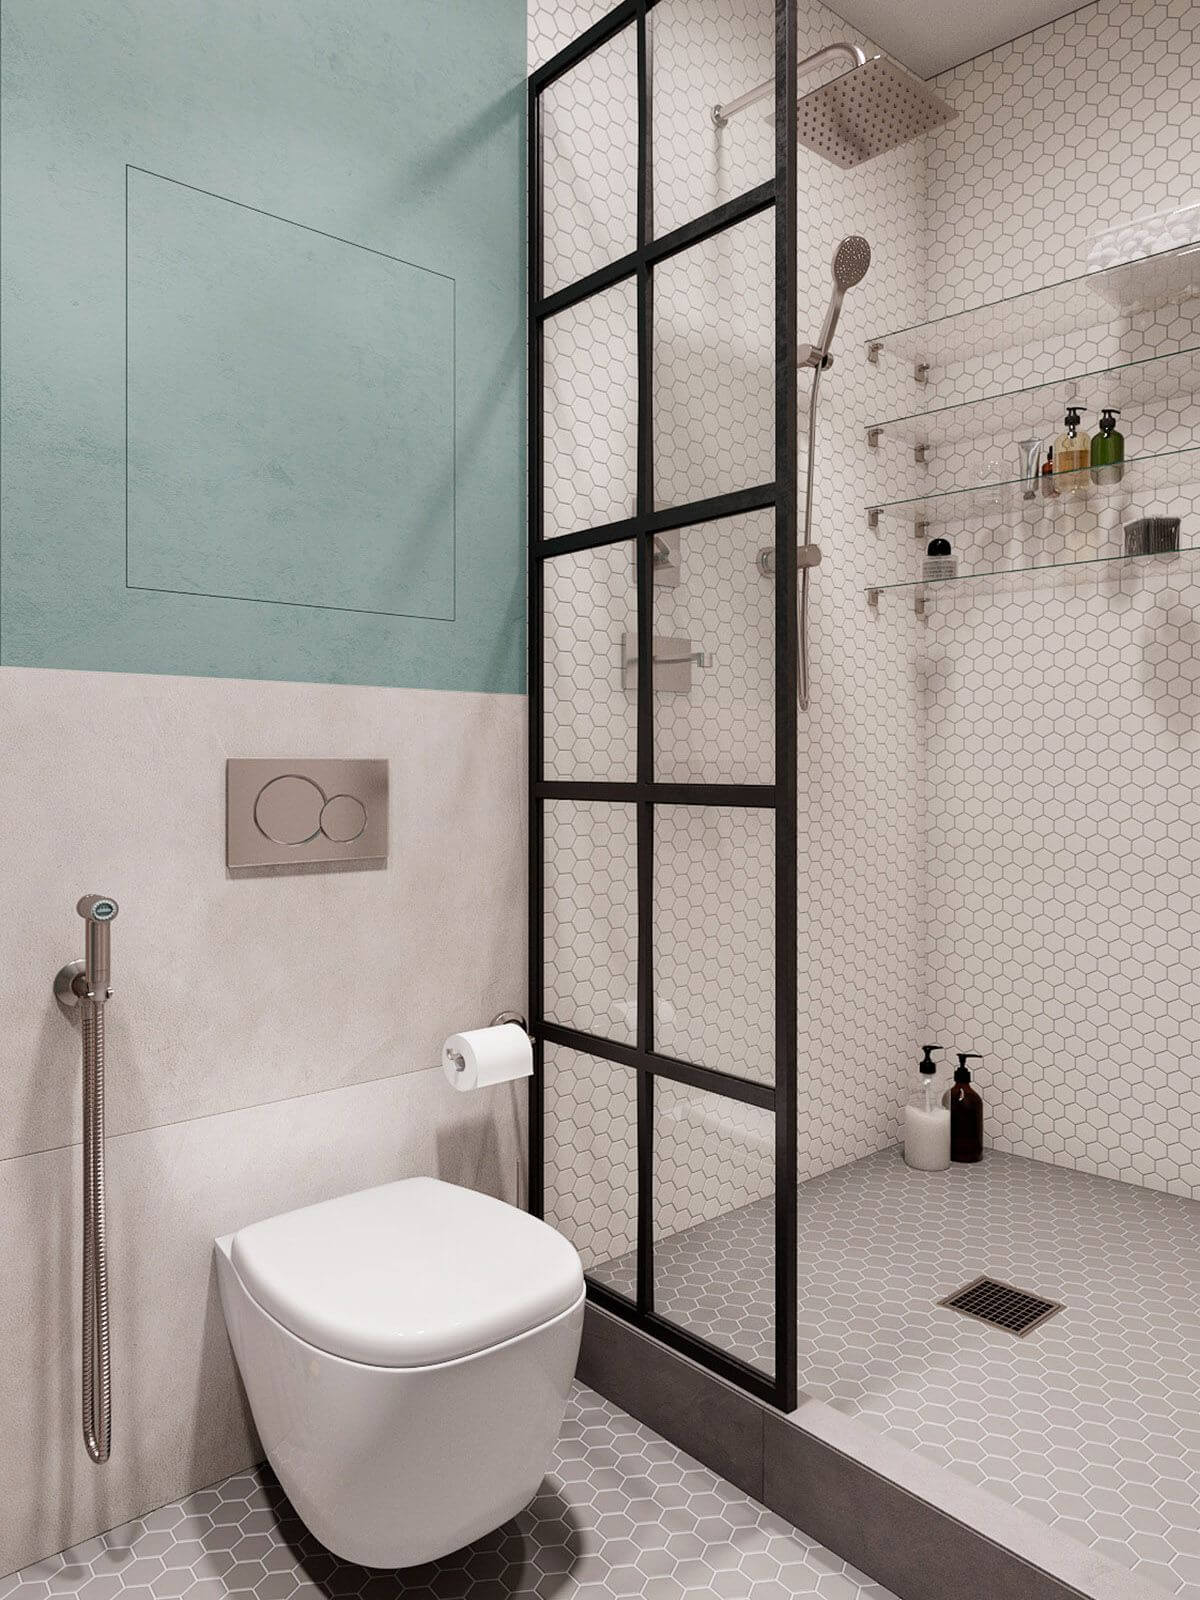 стеклянная штора в черном профиле отделяющая унитаз от душевой зоны в ванной комнате